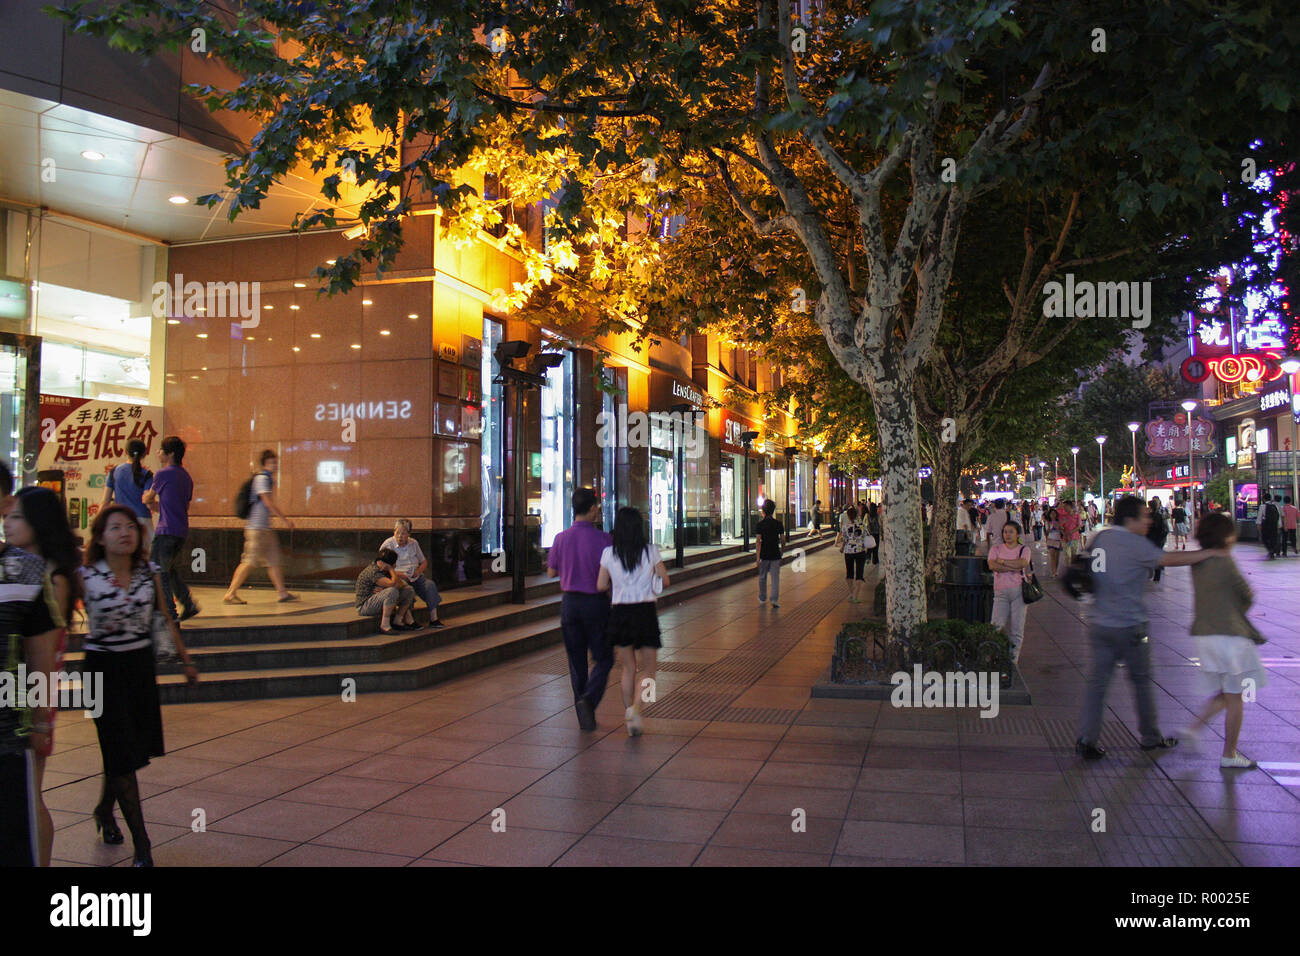 Shopping at night, Nanjing Road, Shanghai, China Stock Photo